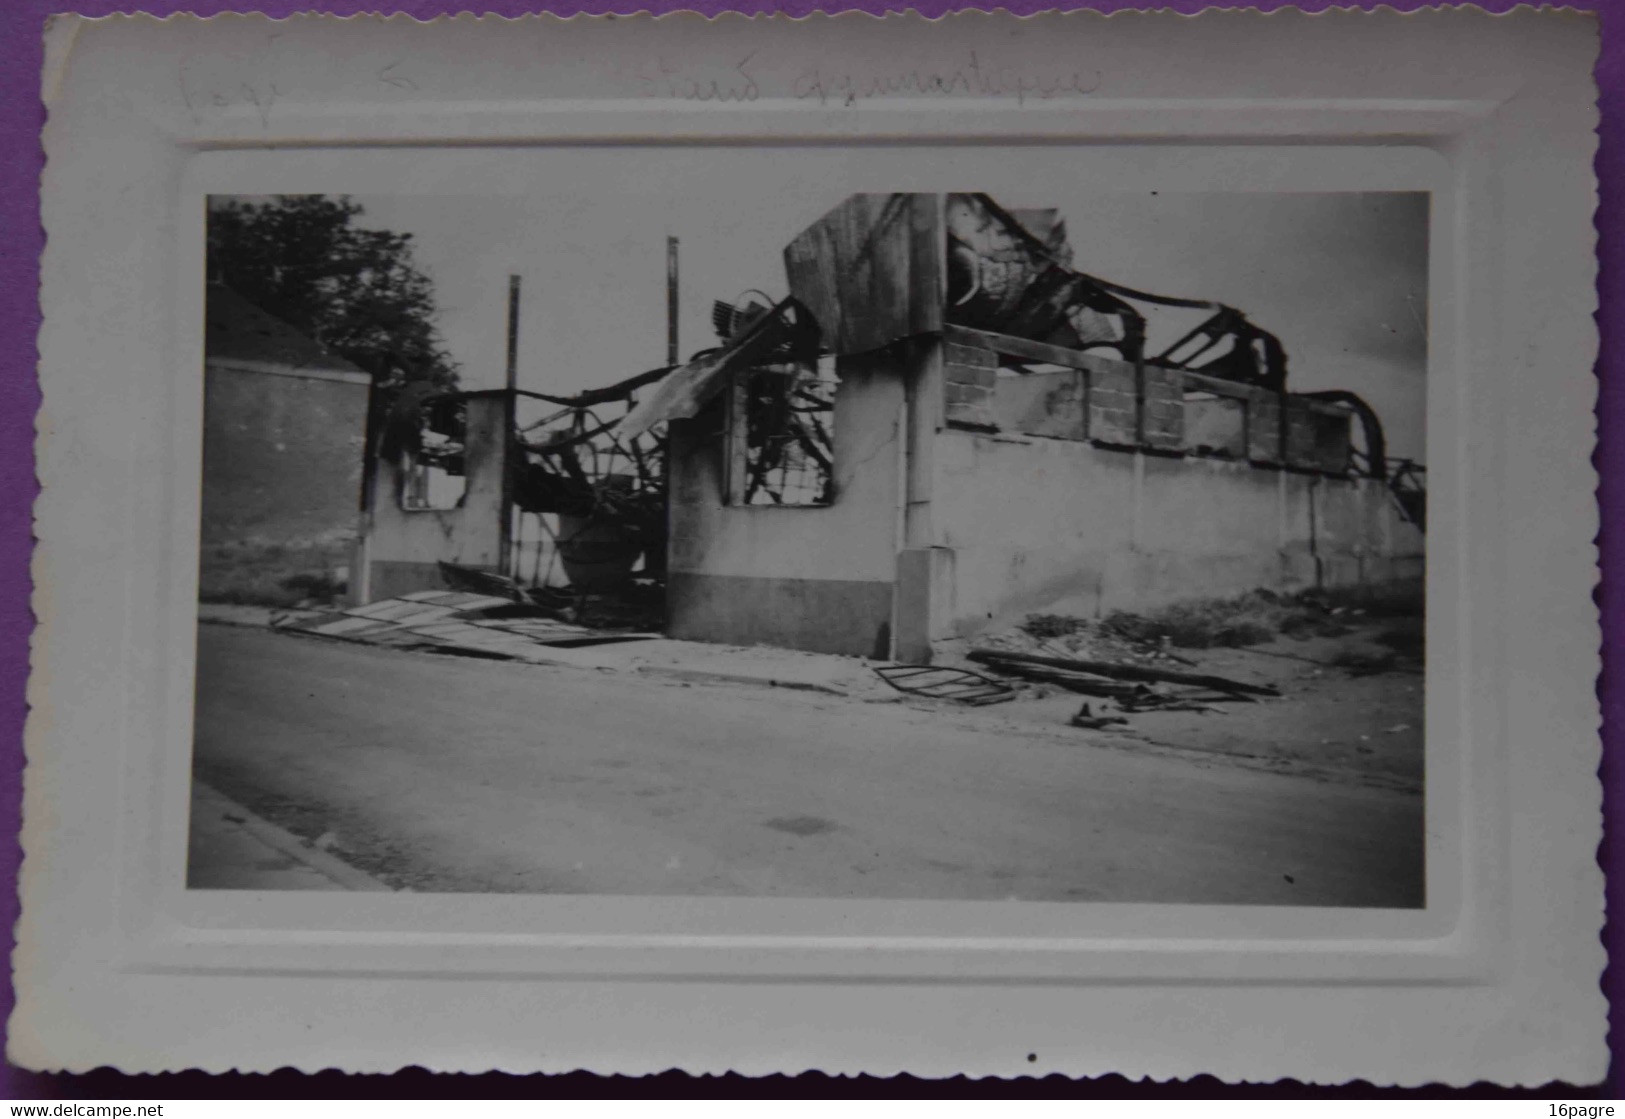 PHOTO ORIGINALE, BOMBARDEMENTS DE SAINT-NAZAIRE, SALLE DE GYMNASTIQUE DÉTRUITE, WW2, LOIRE-ATLANTIQUE. - Krieg, Militär